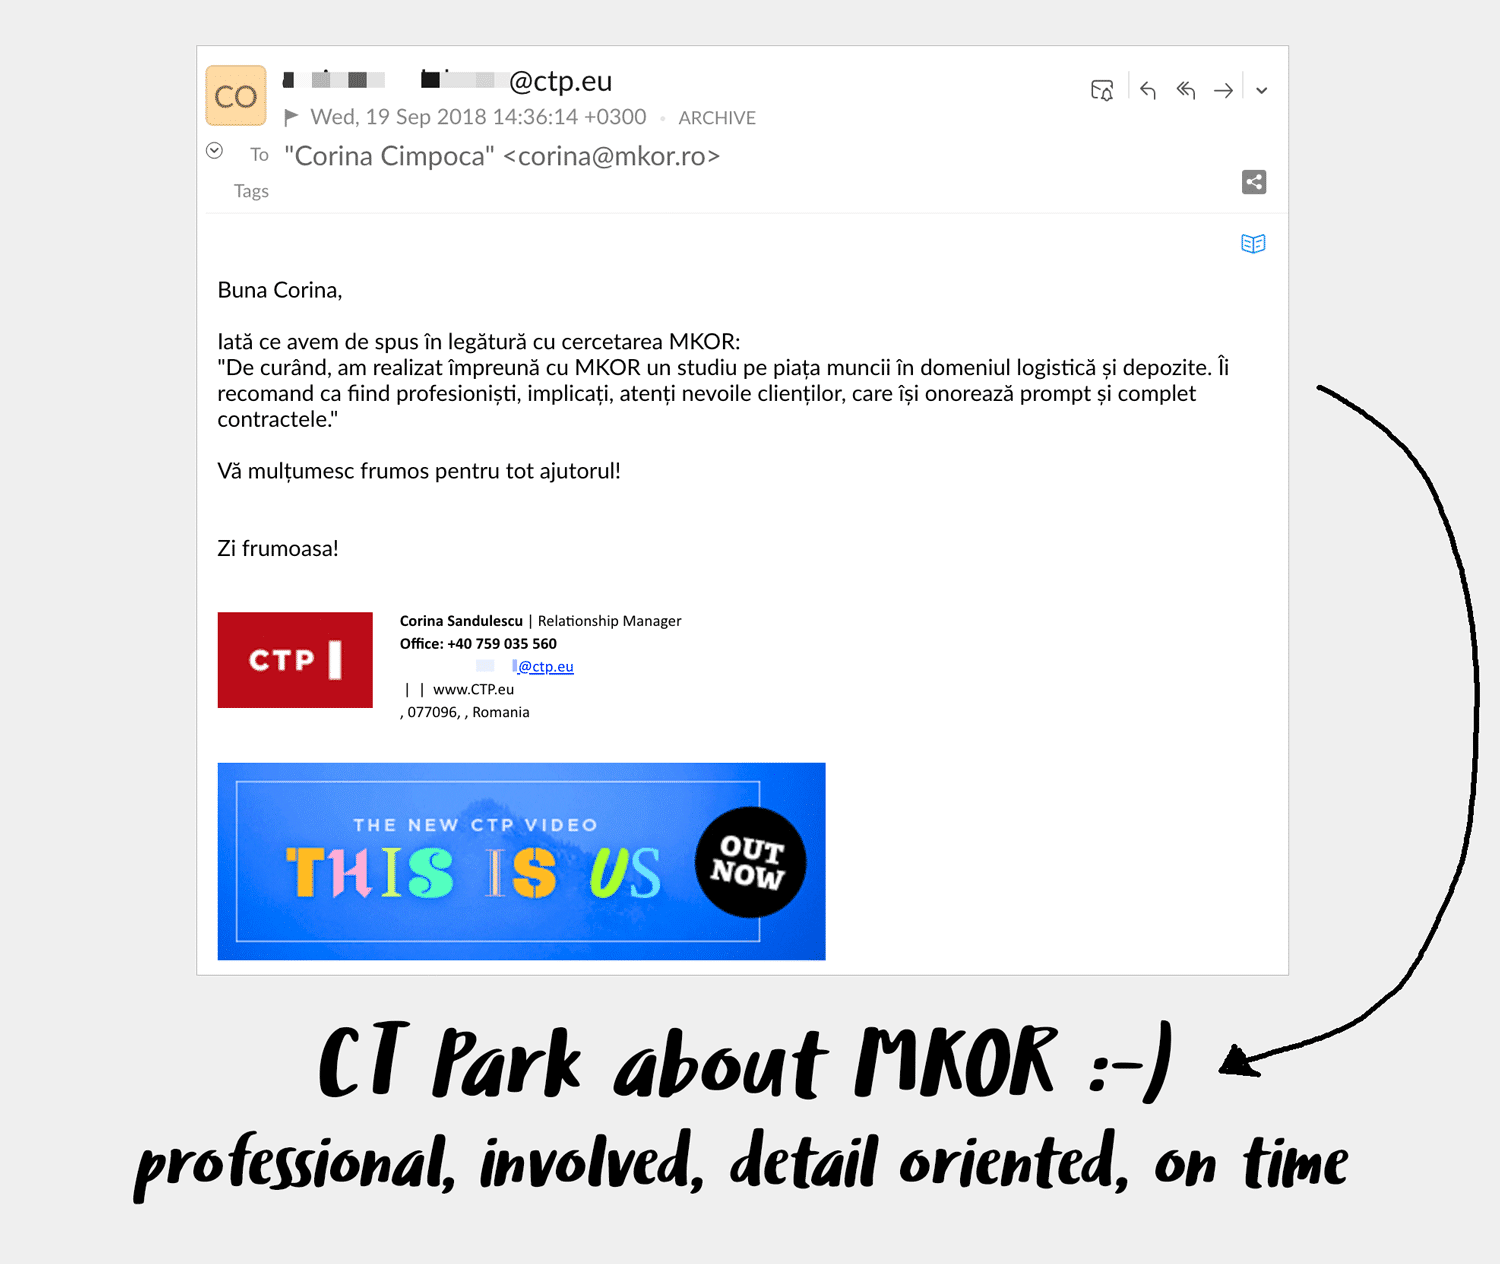 ctpark-recommends-mkor